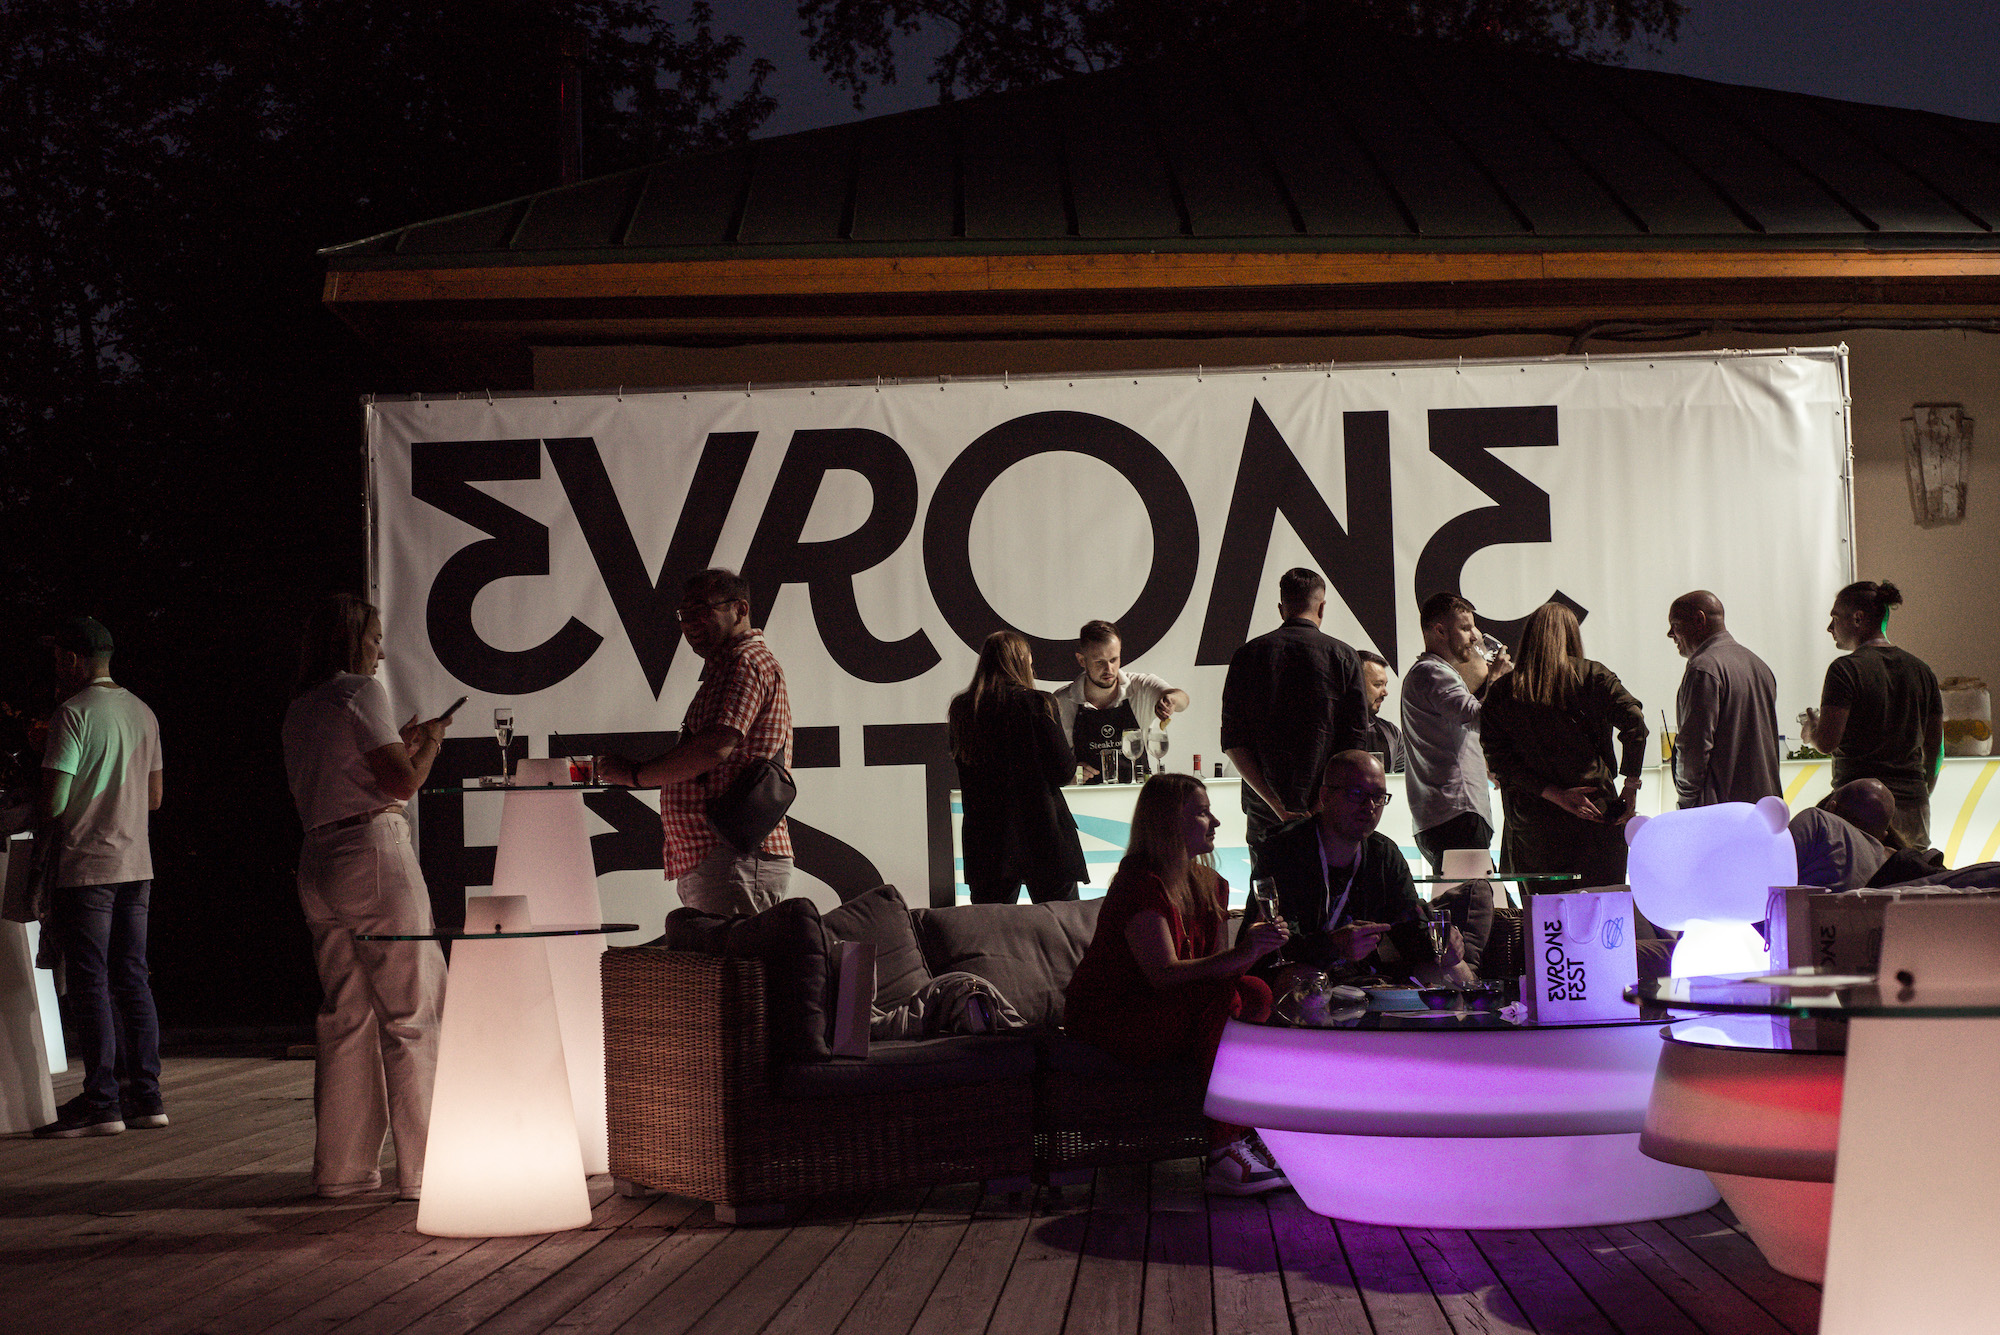 Evrone News #08: выступили на конференциях и провели первый Evrone Fest